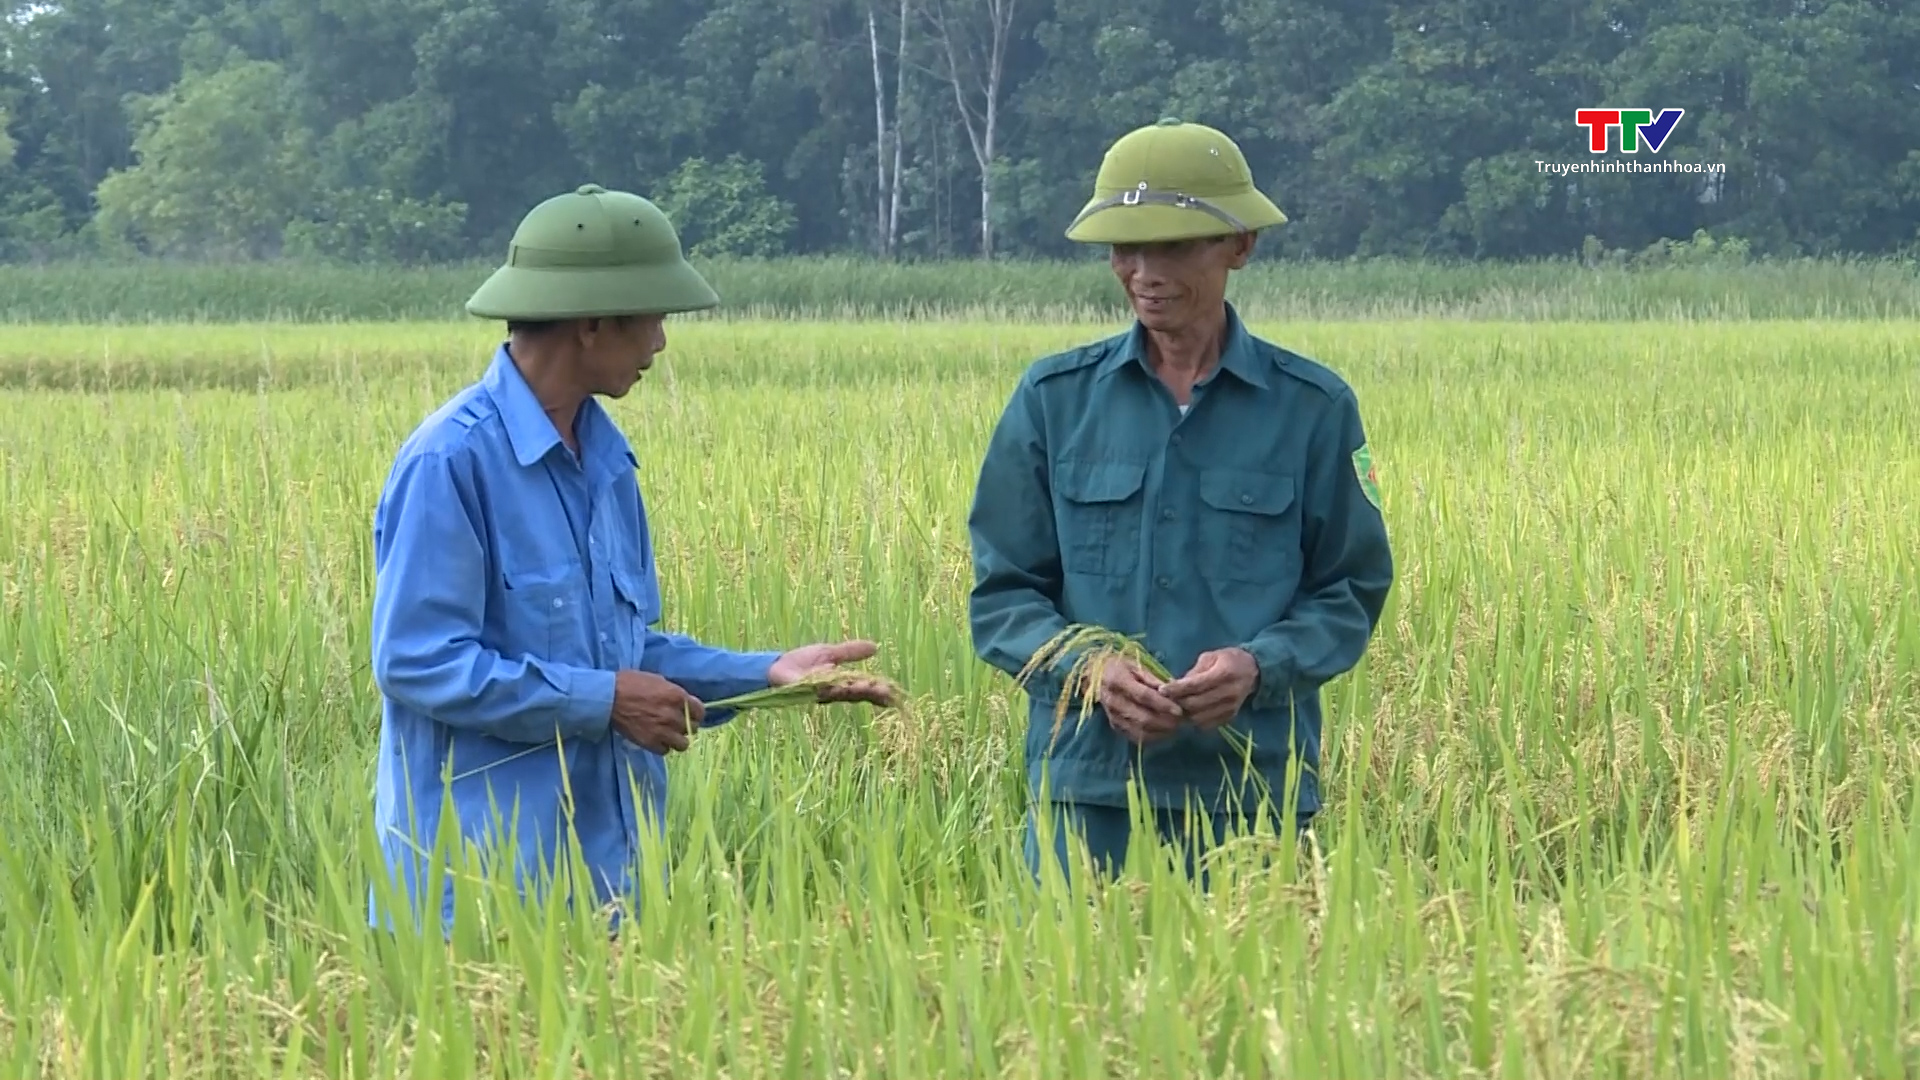 Sản xuất lúa hữu cơ hướng tới nền nông nghiệp xanh - Ảnh 2.